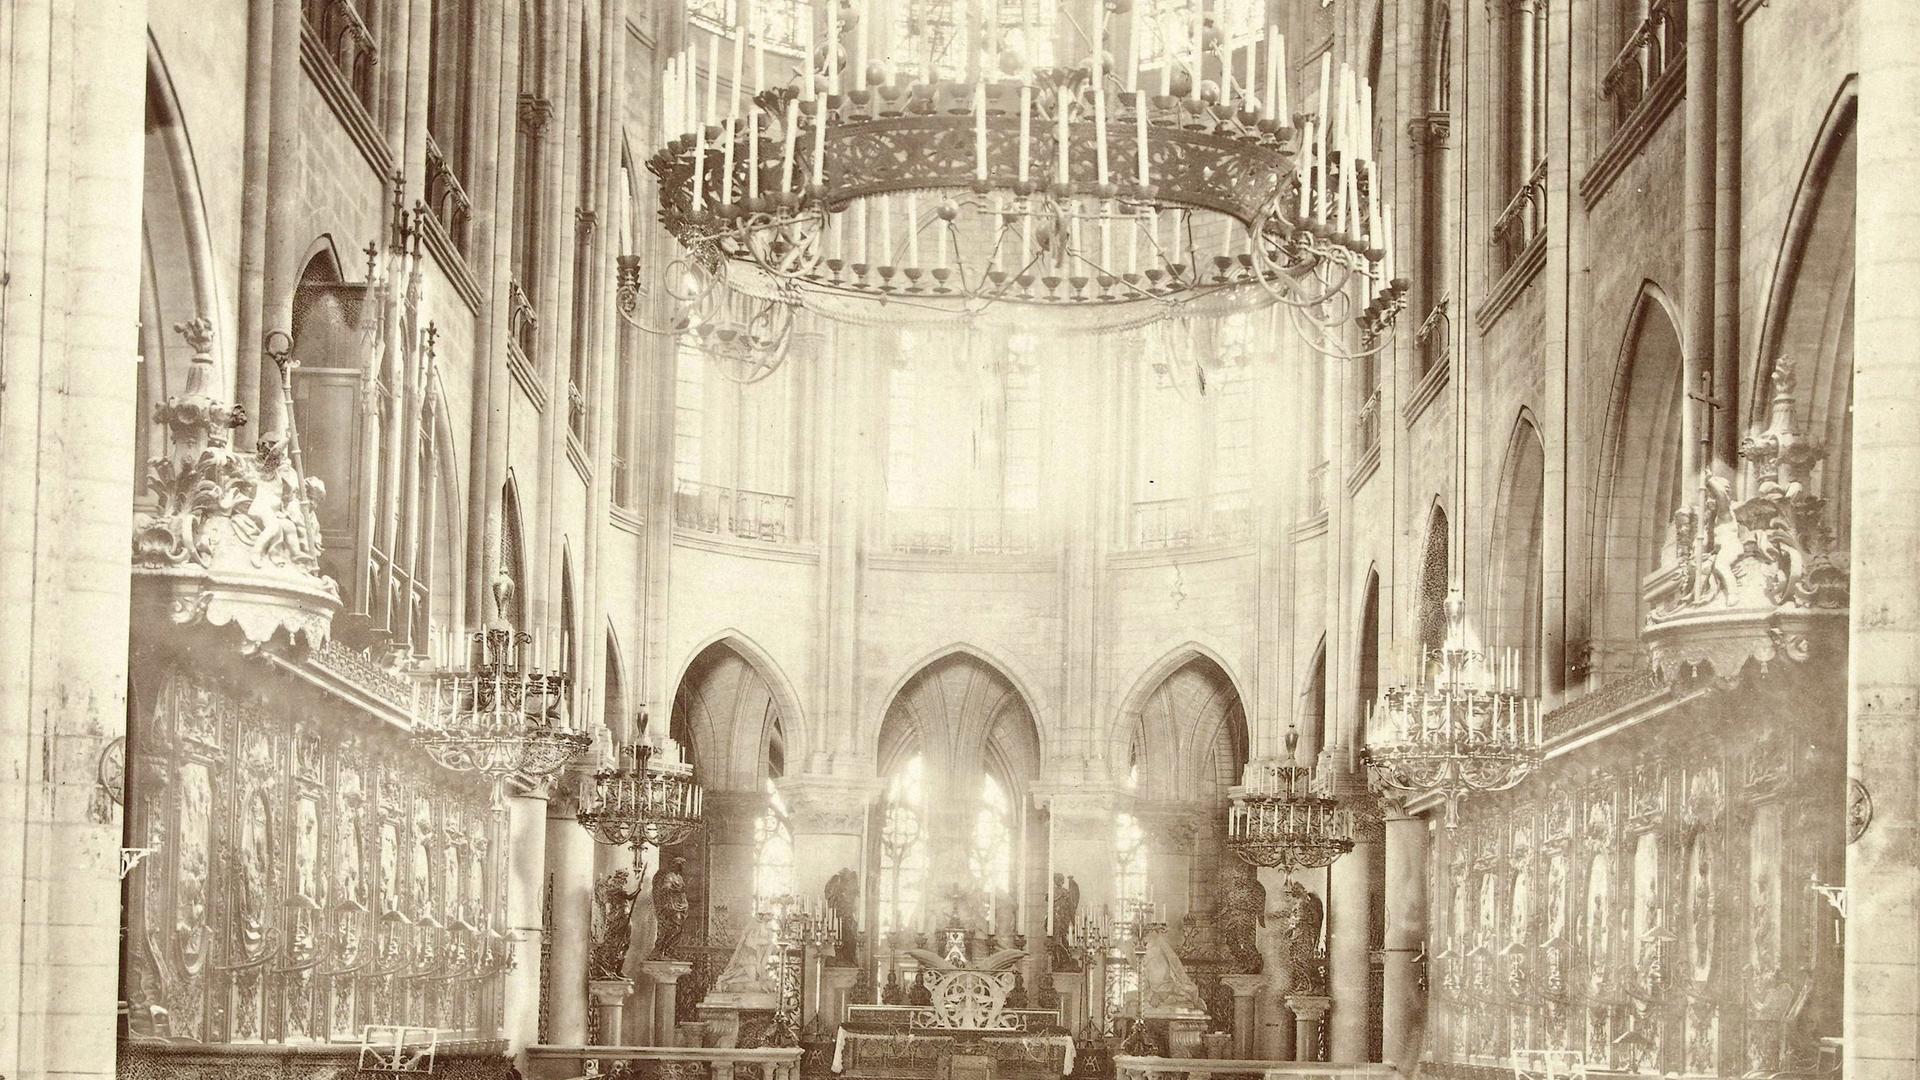 Historische Aufnahme des Innenraums von Notre-Dame in Paris, ca. 1850 - 1900.